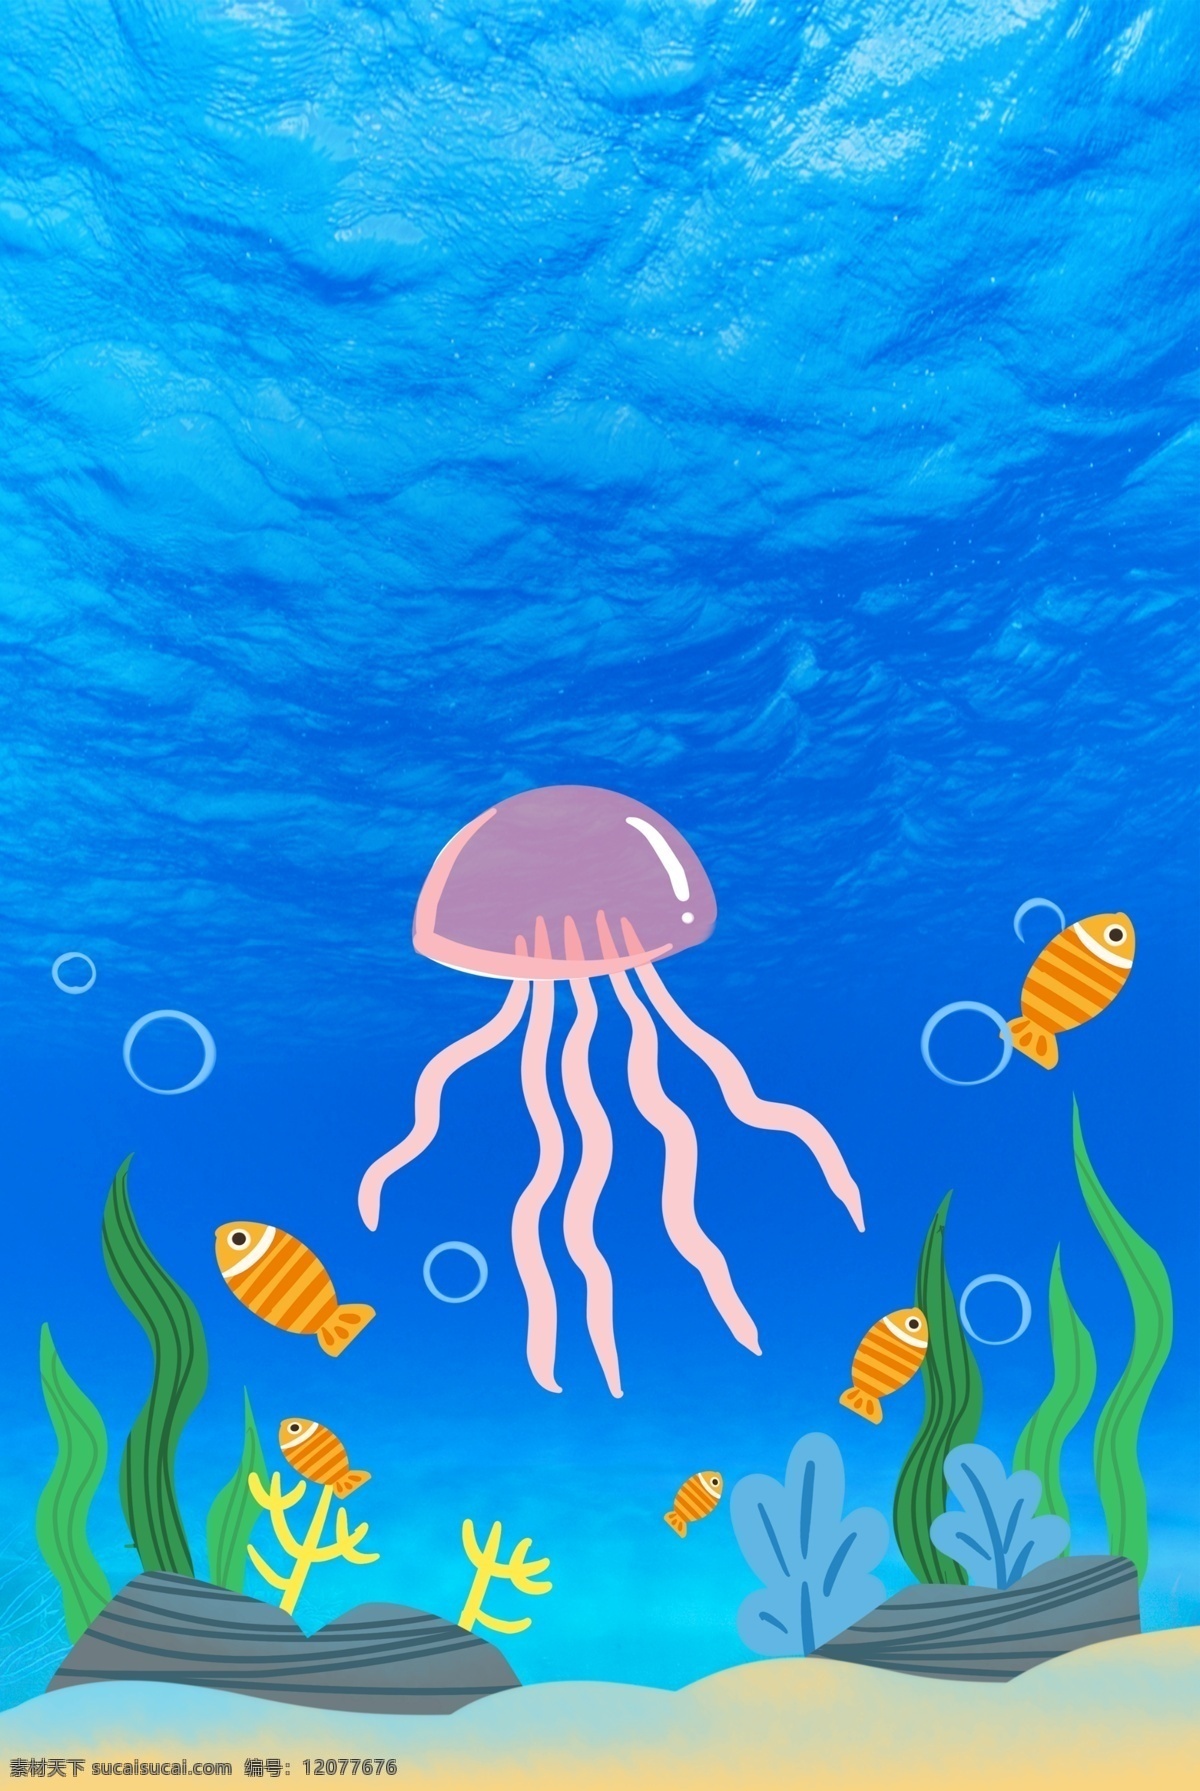 卡通 蓝色 海底 世界 海报 背景 海洋 珊瑚 水草 水母 海底世界 海洋生物 海洋馆 海底世界背景